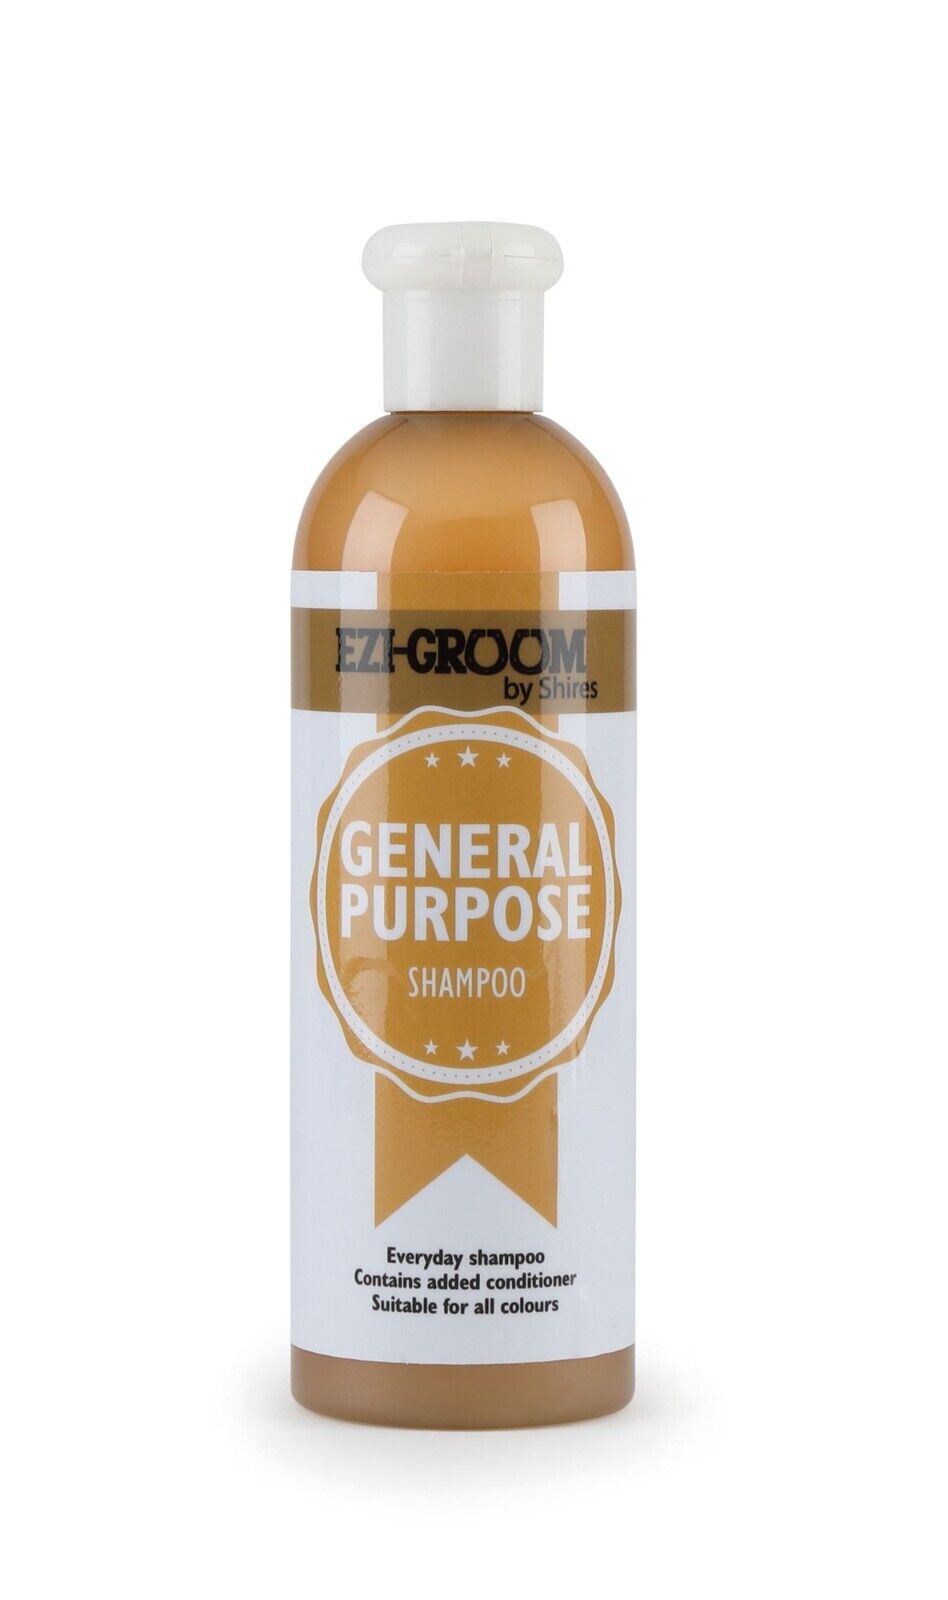 Ezi -groom General Purpose Shampoo 13.5oz